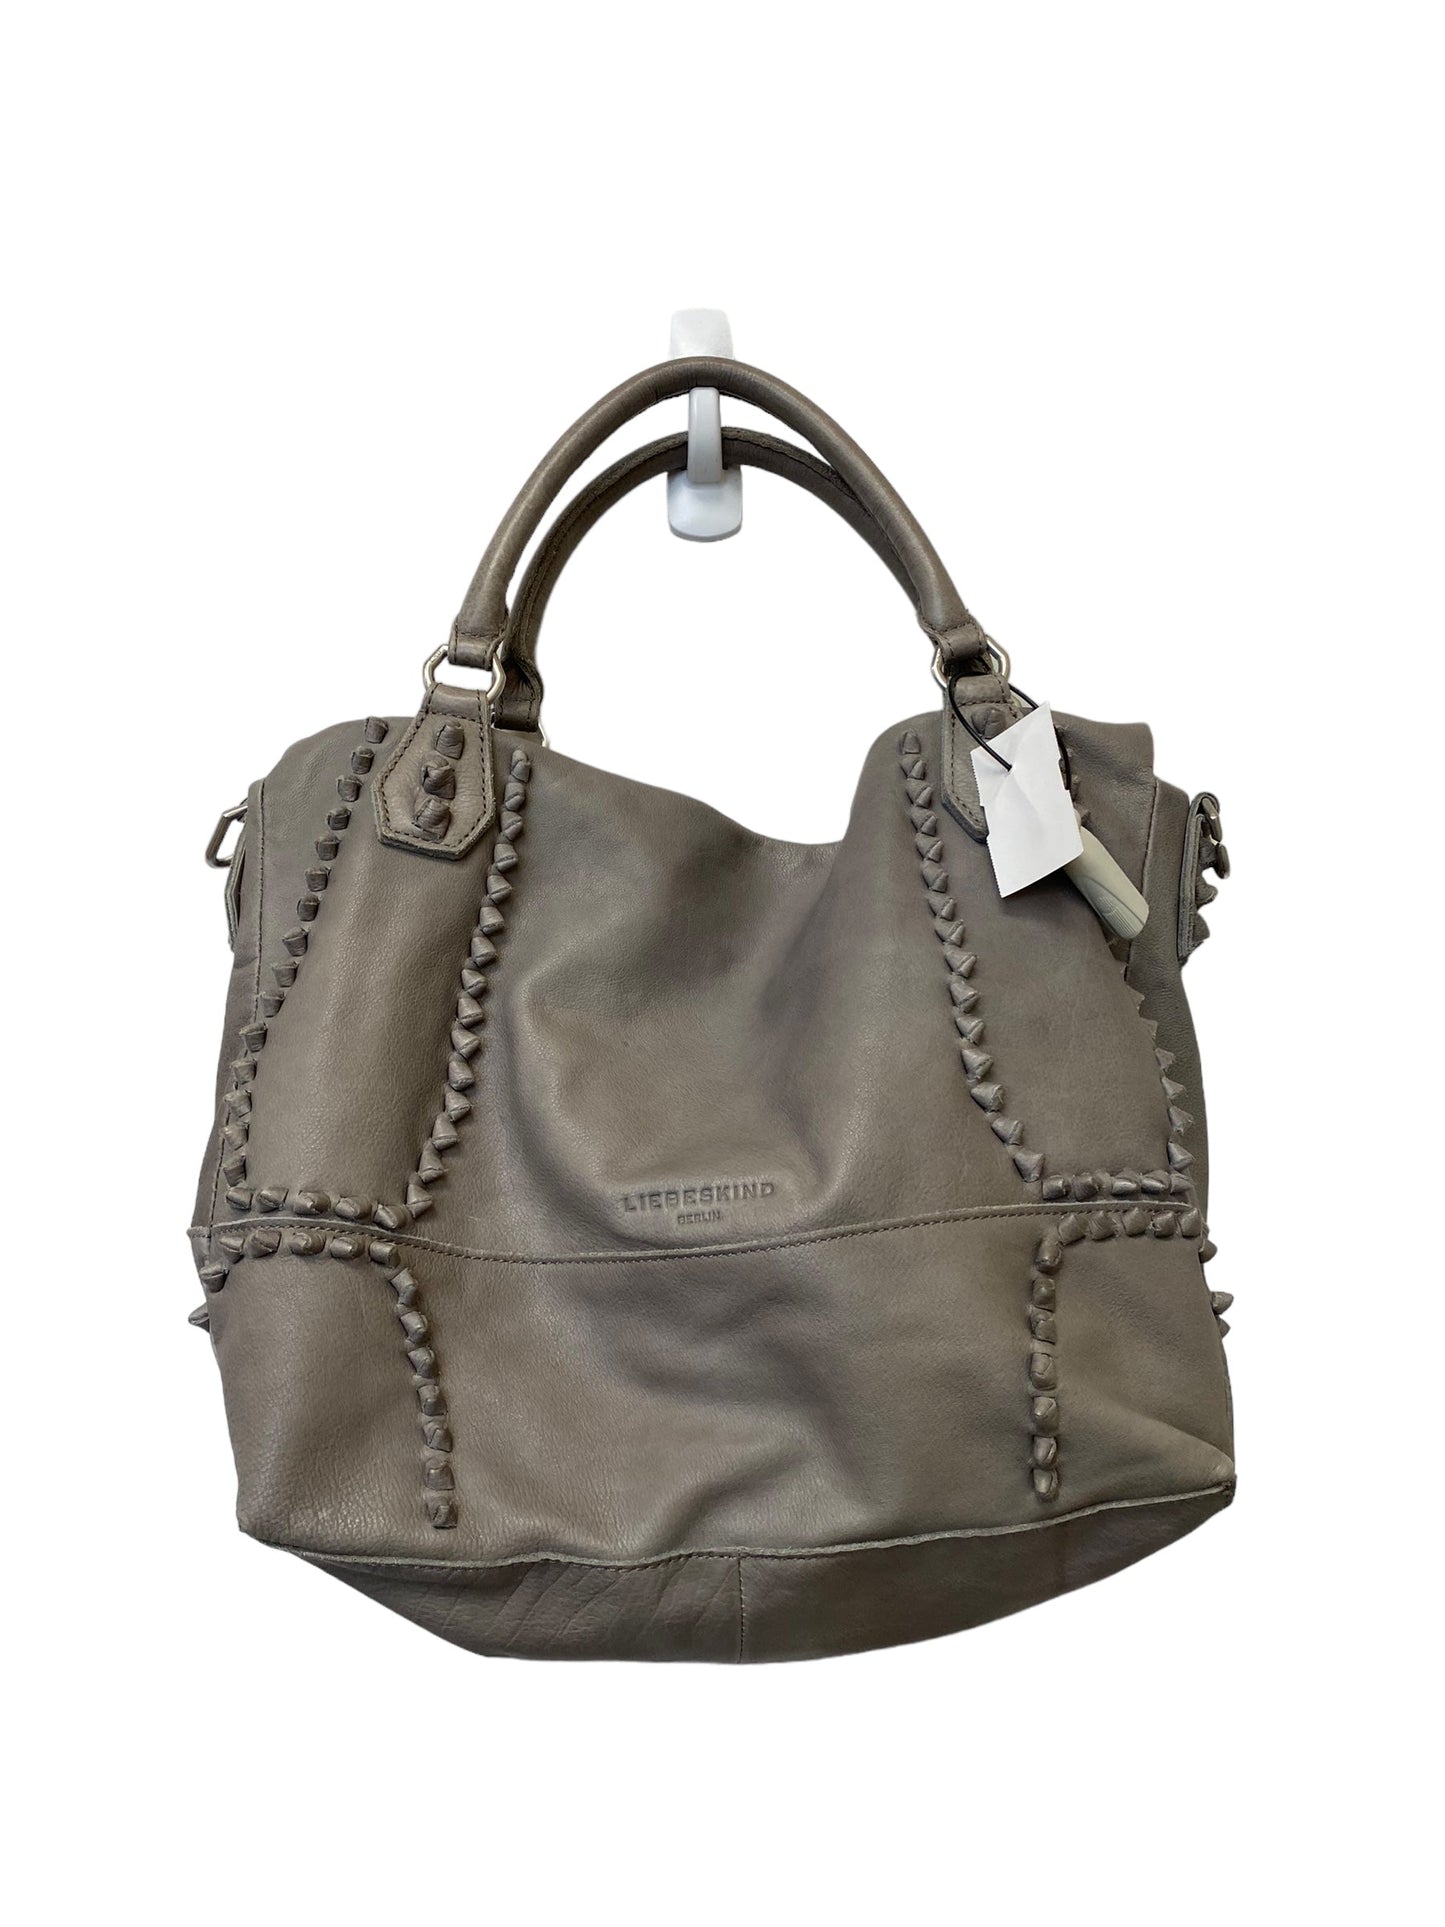 Handbag Designer By Liebeskind  Size: Large